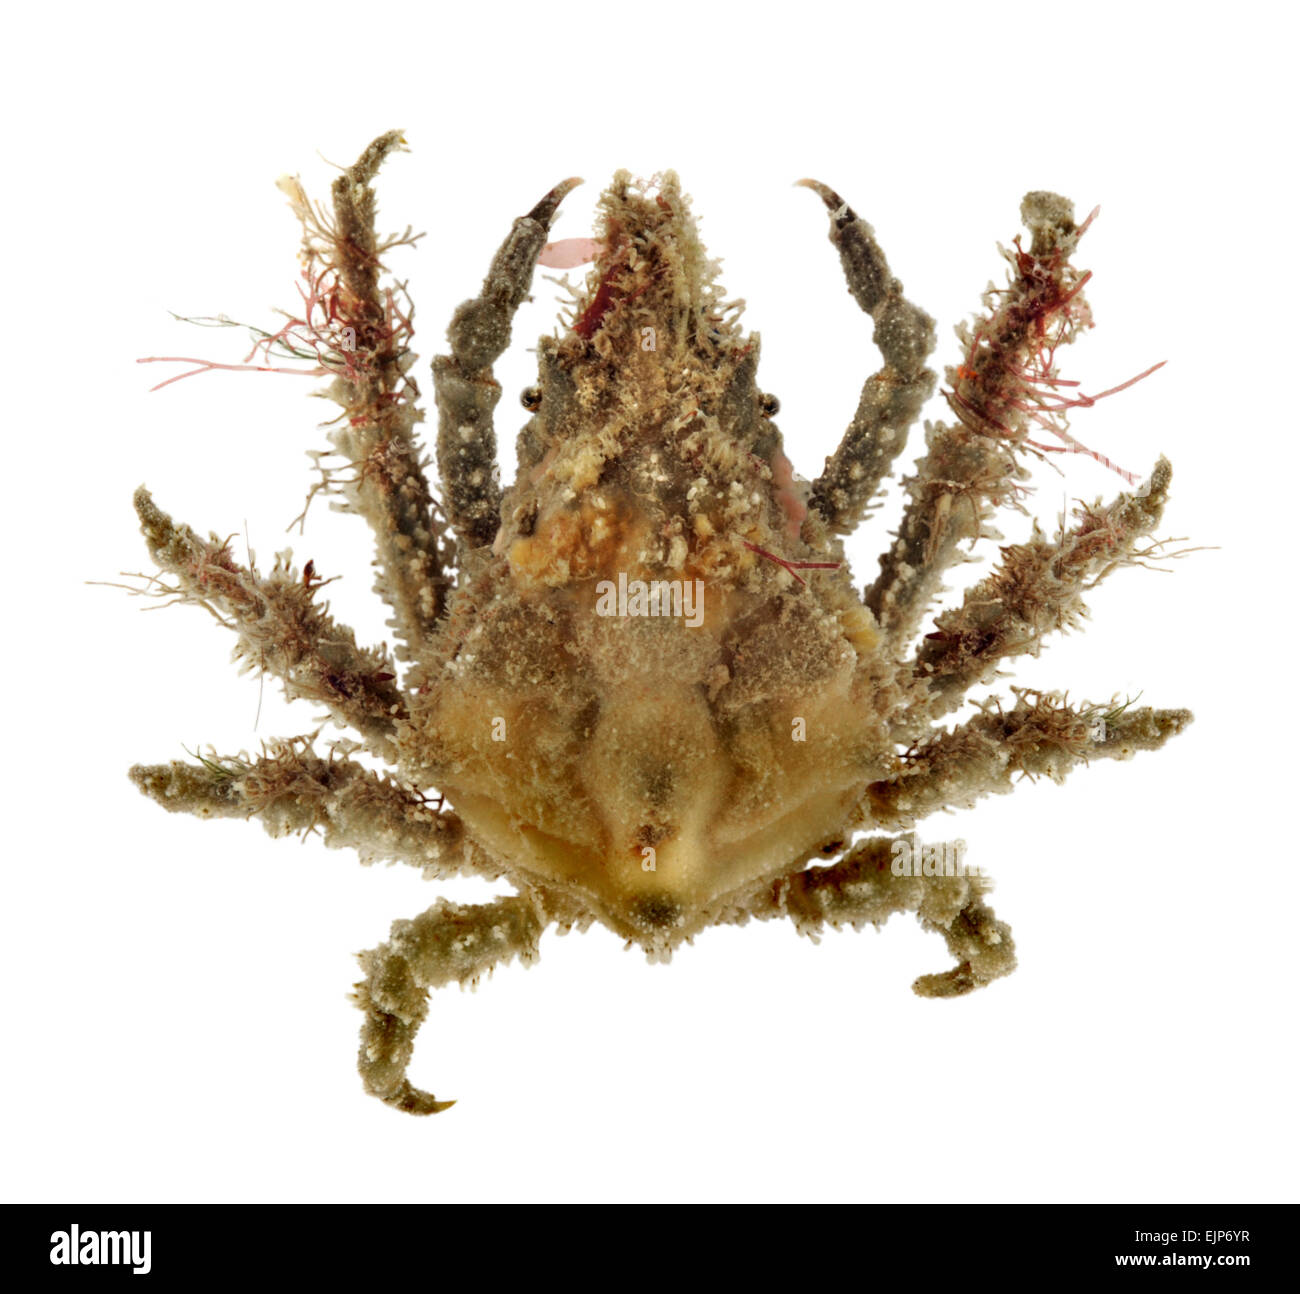 Spider Crab - Pisa armata Stock Photo